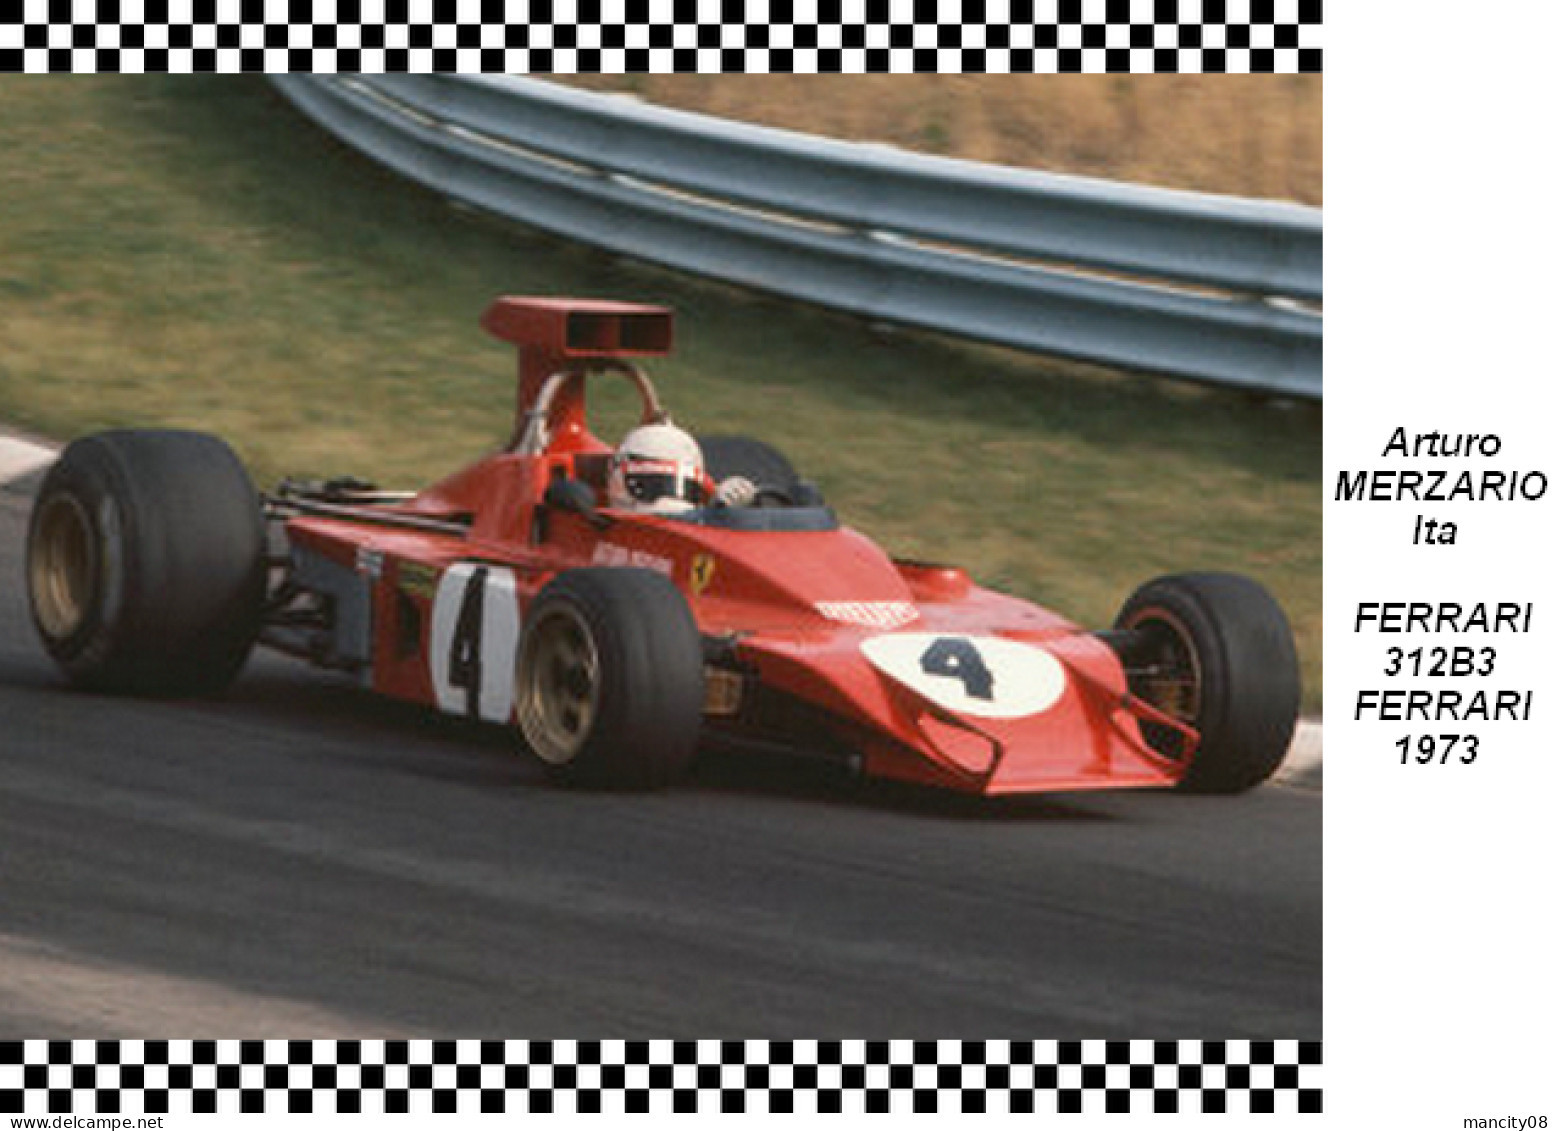 Arturo  Merzario   Ferrari  312B3 1973 - Grand Prix / F1